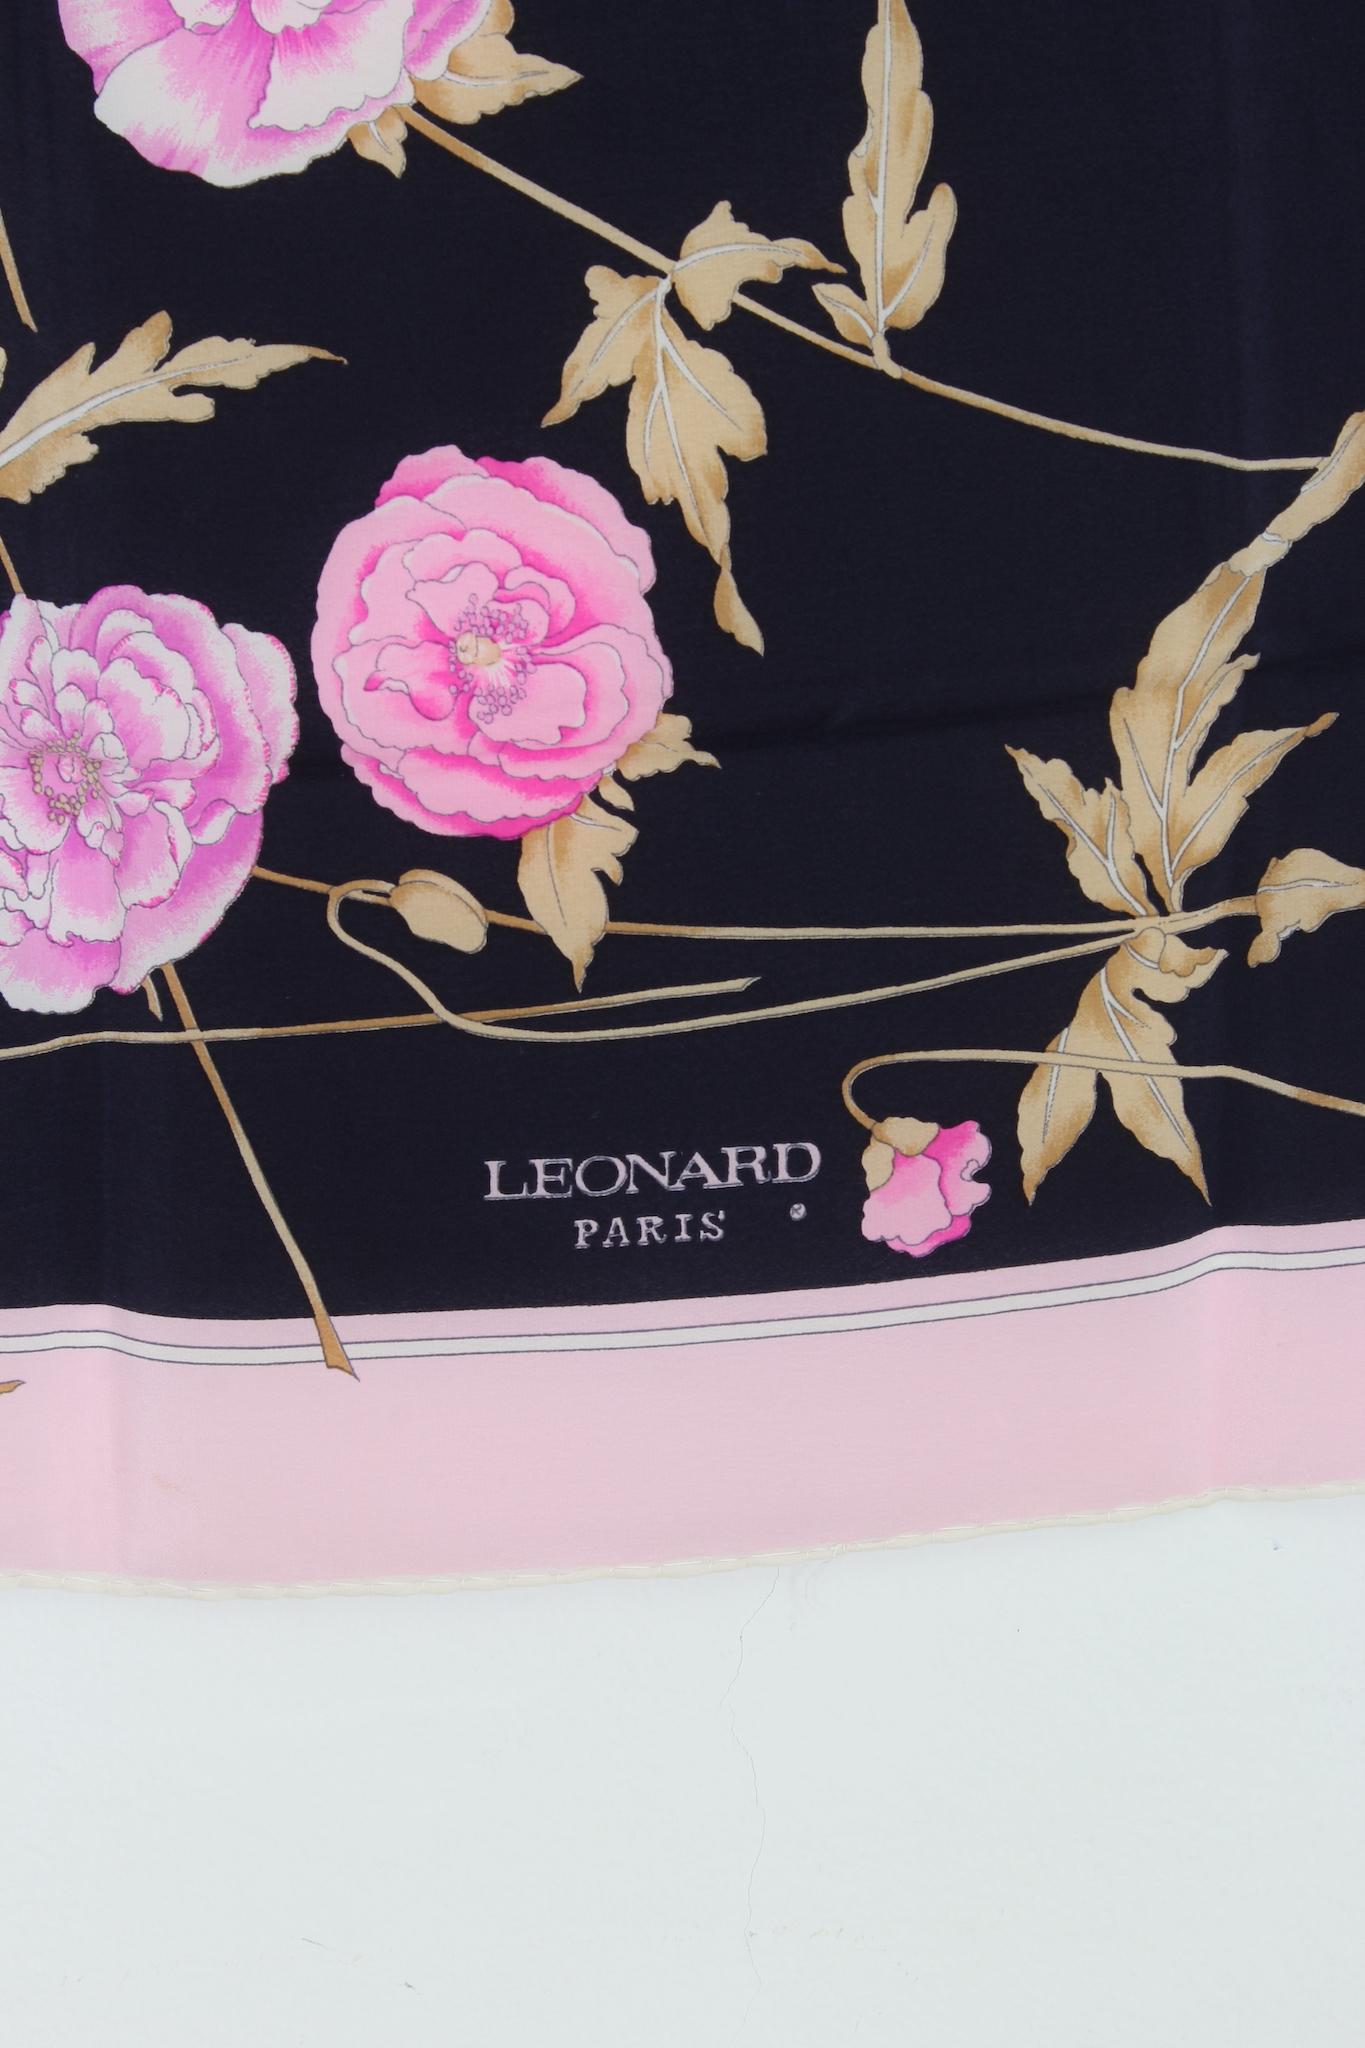 Leonard Paris 1980er Jahre Vintage-Schal. Schwarze Farbe mit rosa Blumenmuster, 100% Seide. Hergestellt in Italien.

Maße: 55 x 59 cm